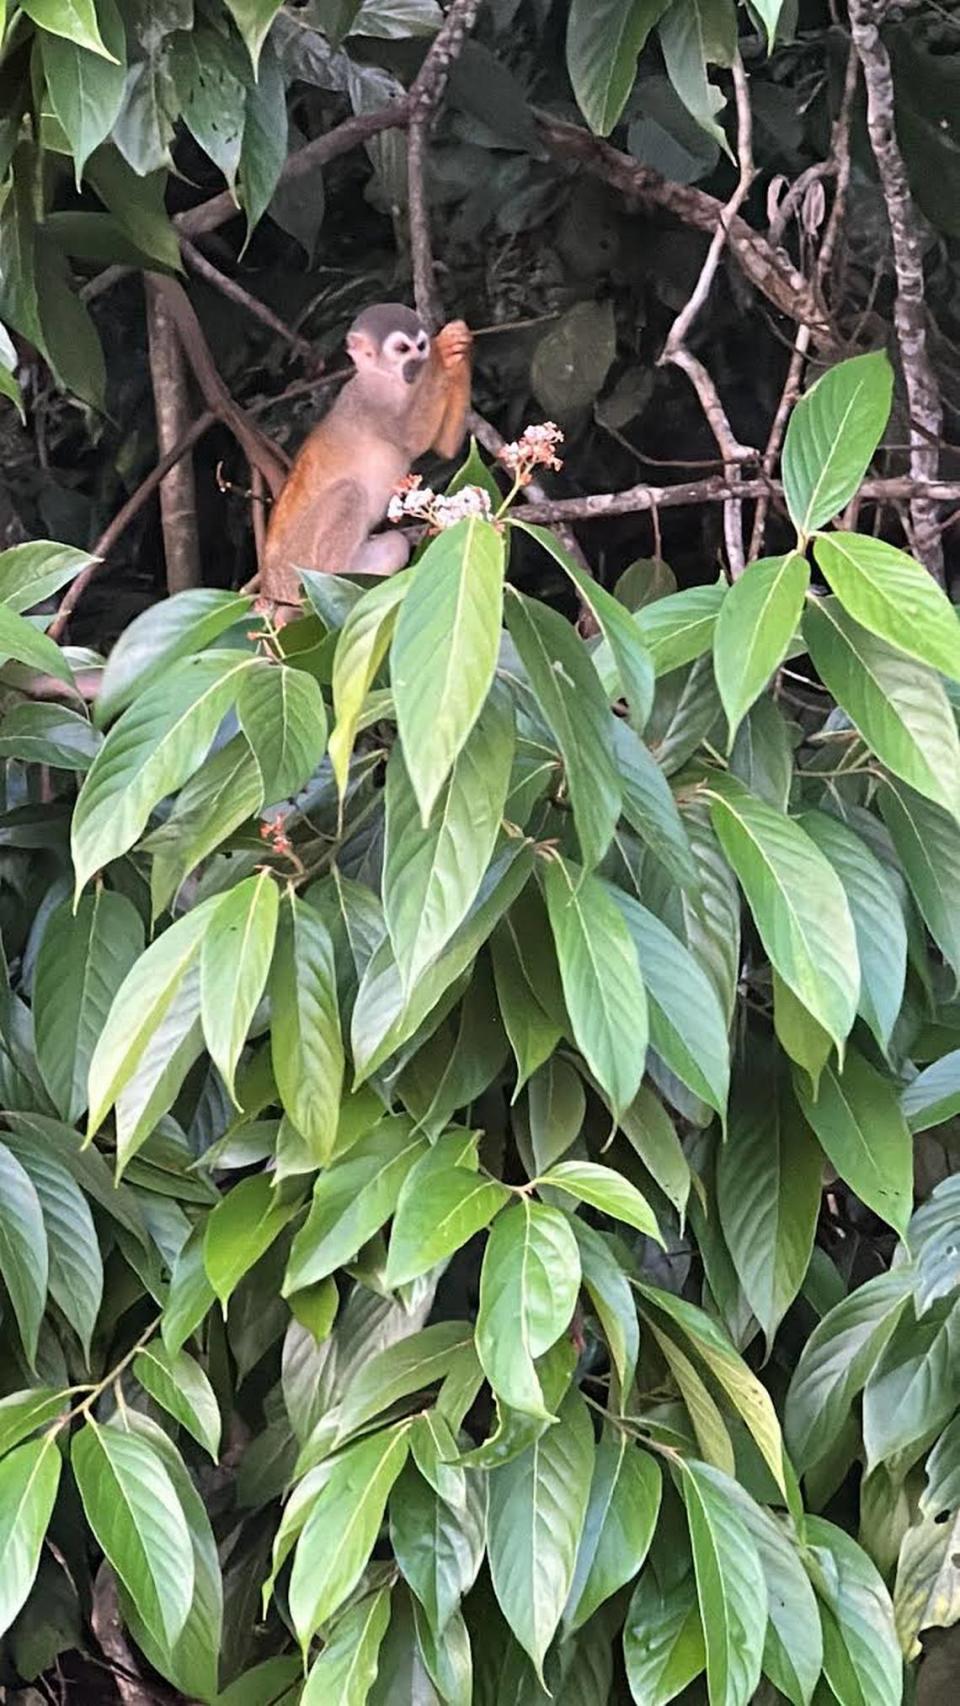 Mono ardilla, común en la selva amazónica.